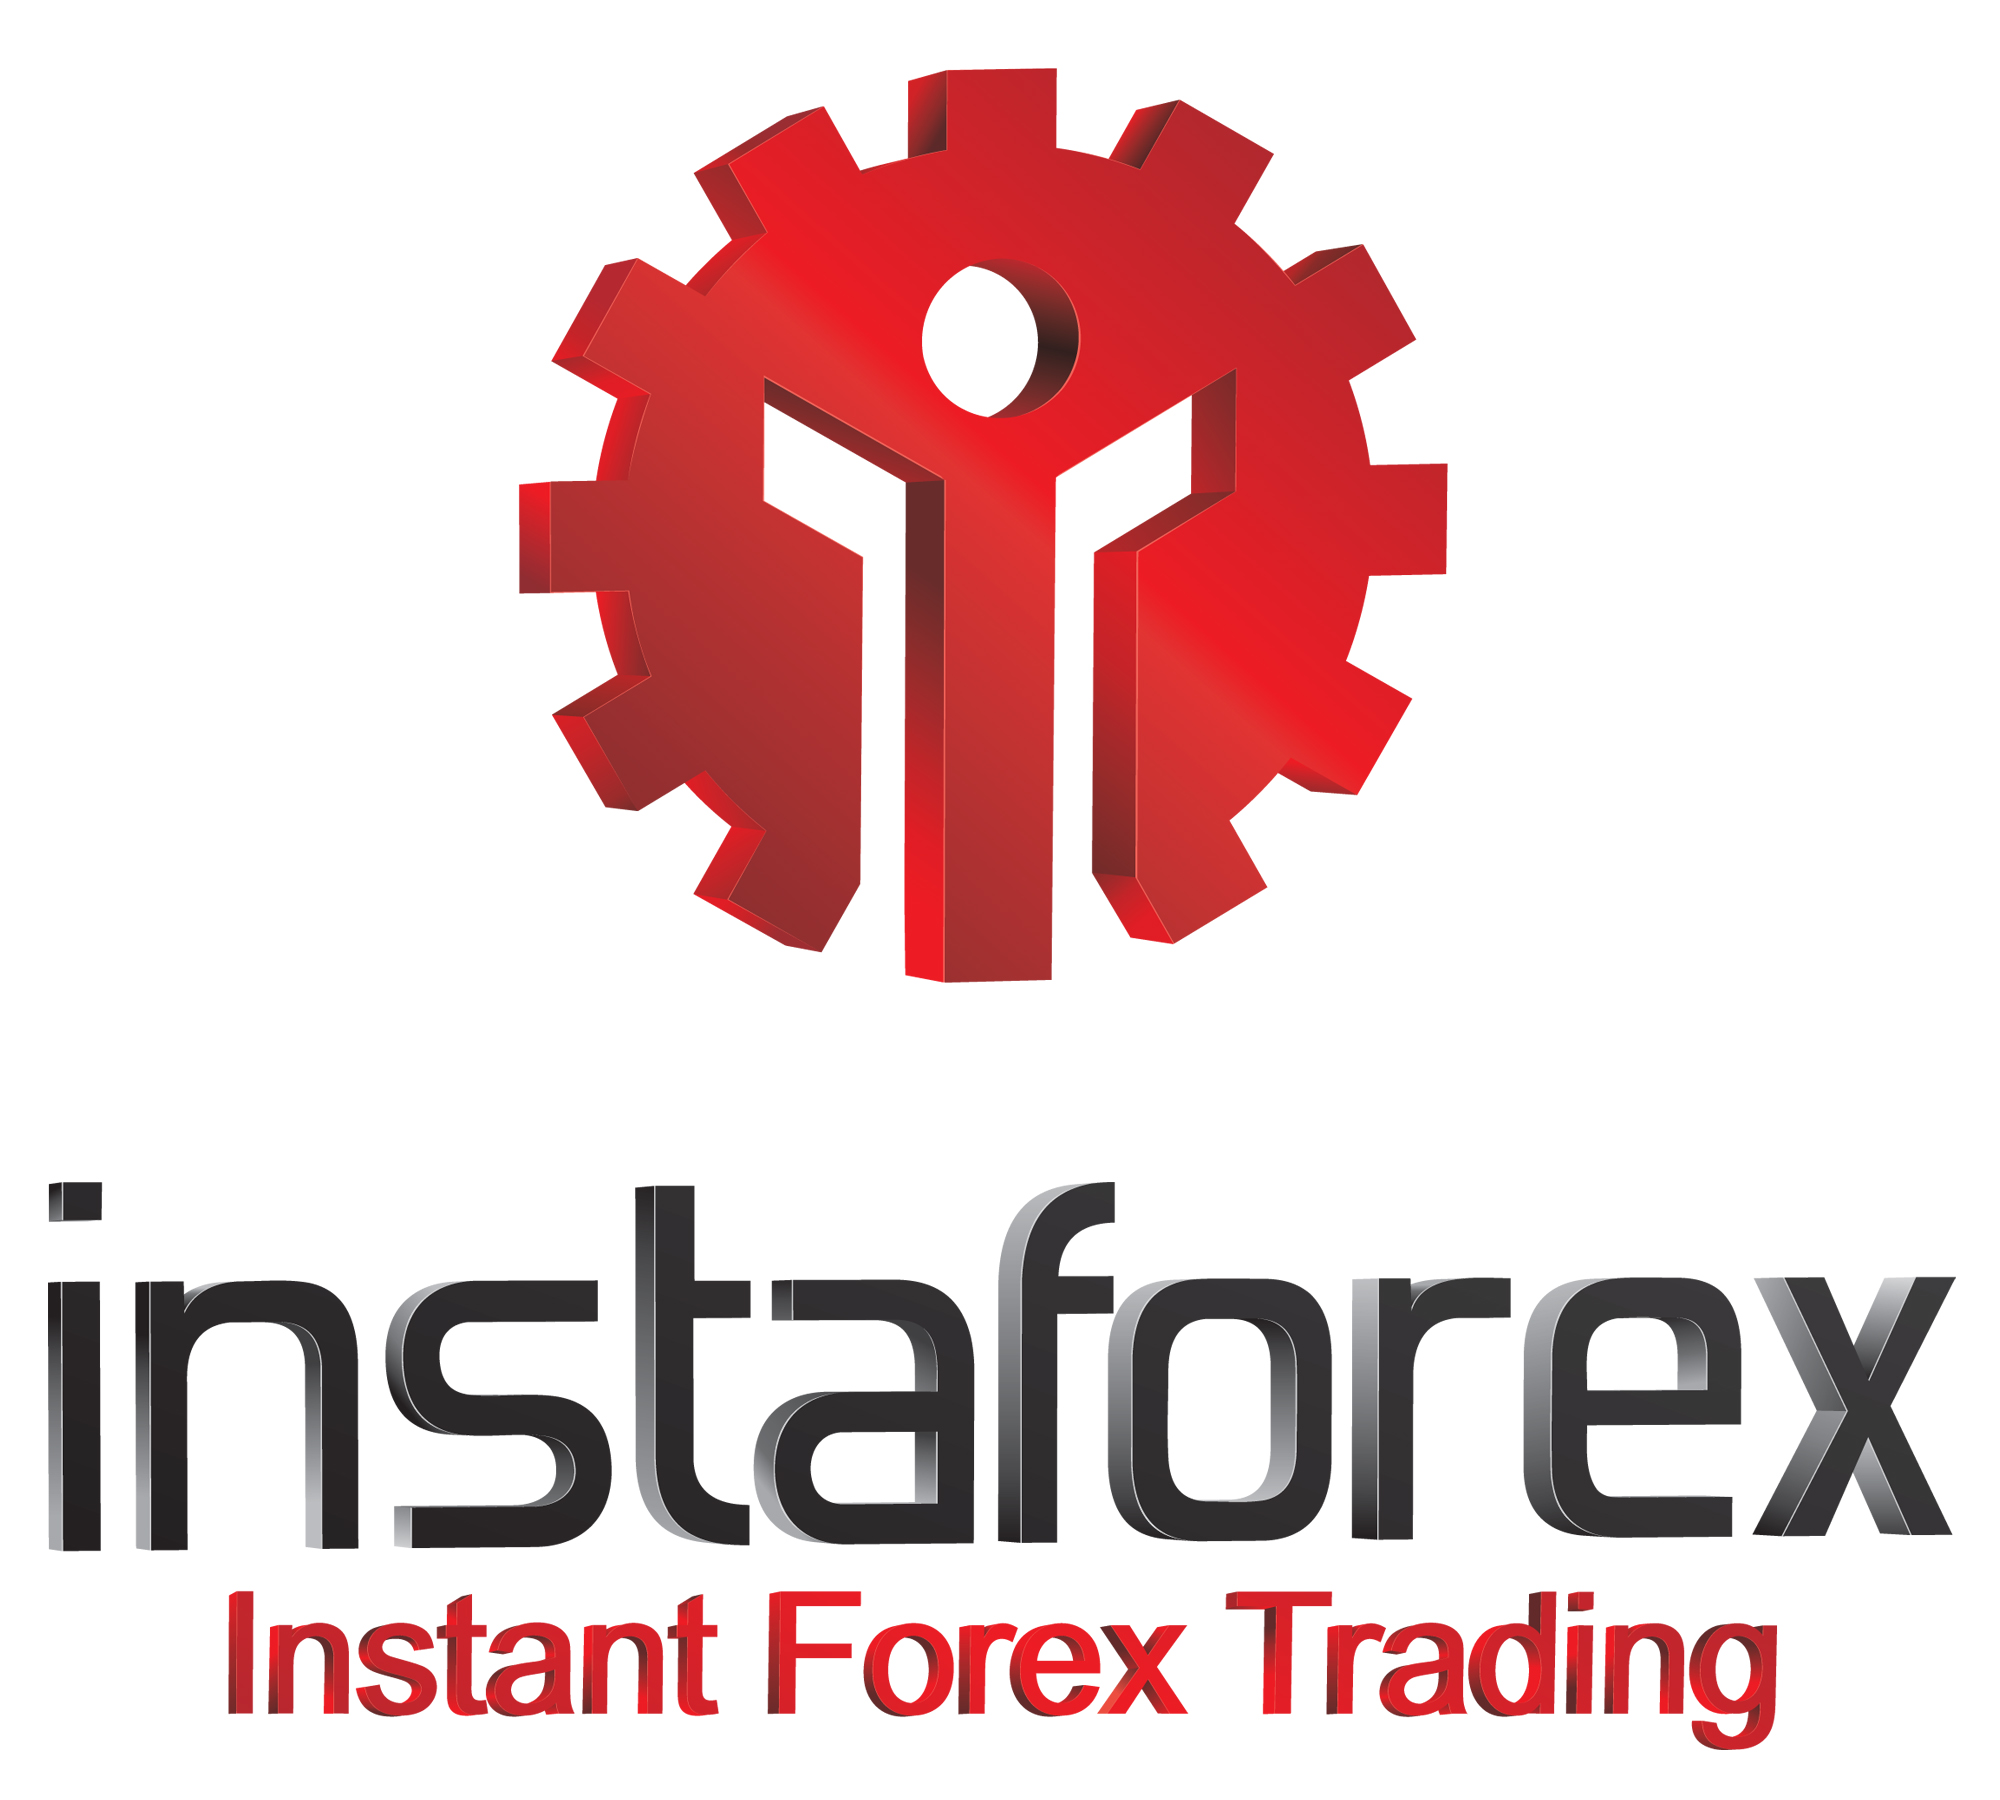 Revisión detallada del broker InstaForex -Trabajando como instatrader en la plataforma MT4 de InstaForex